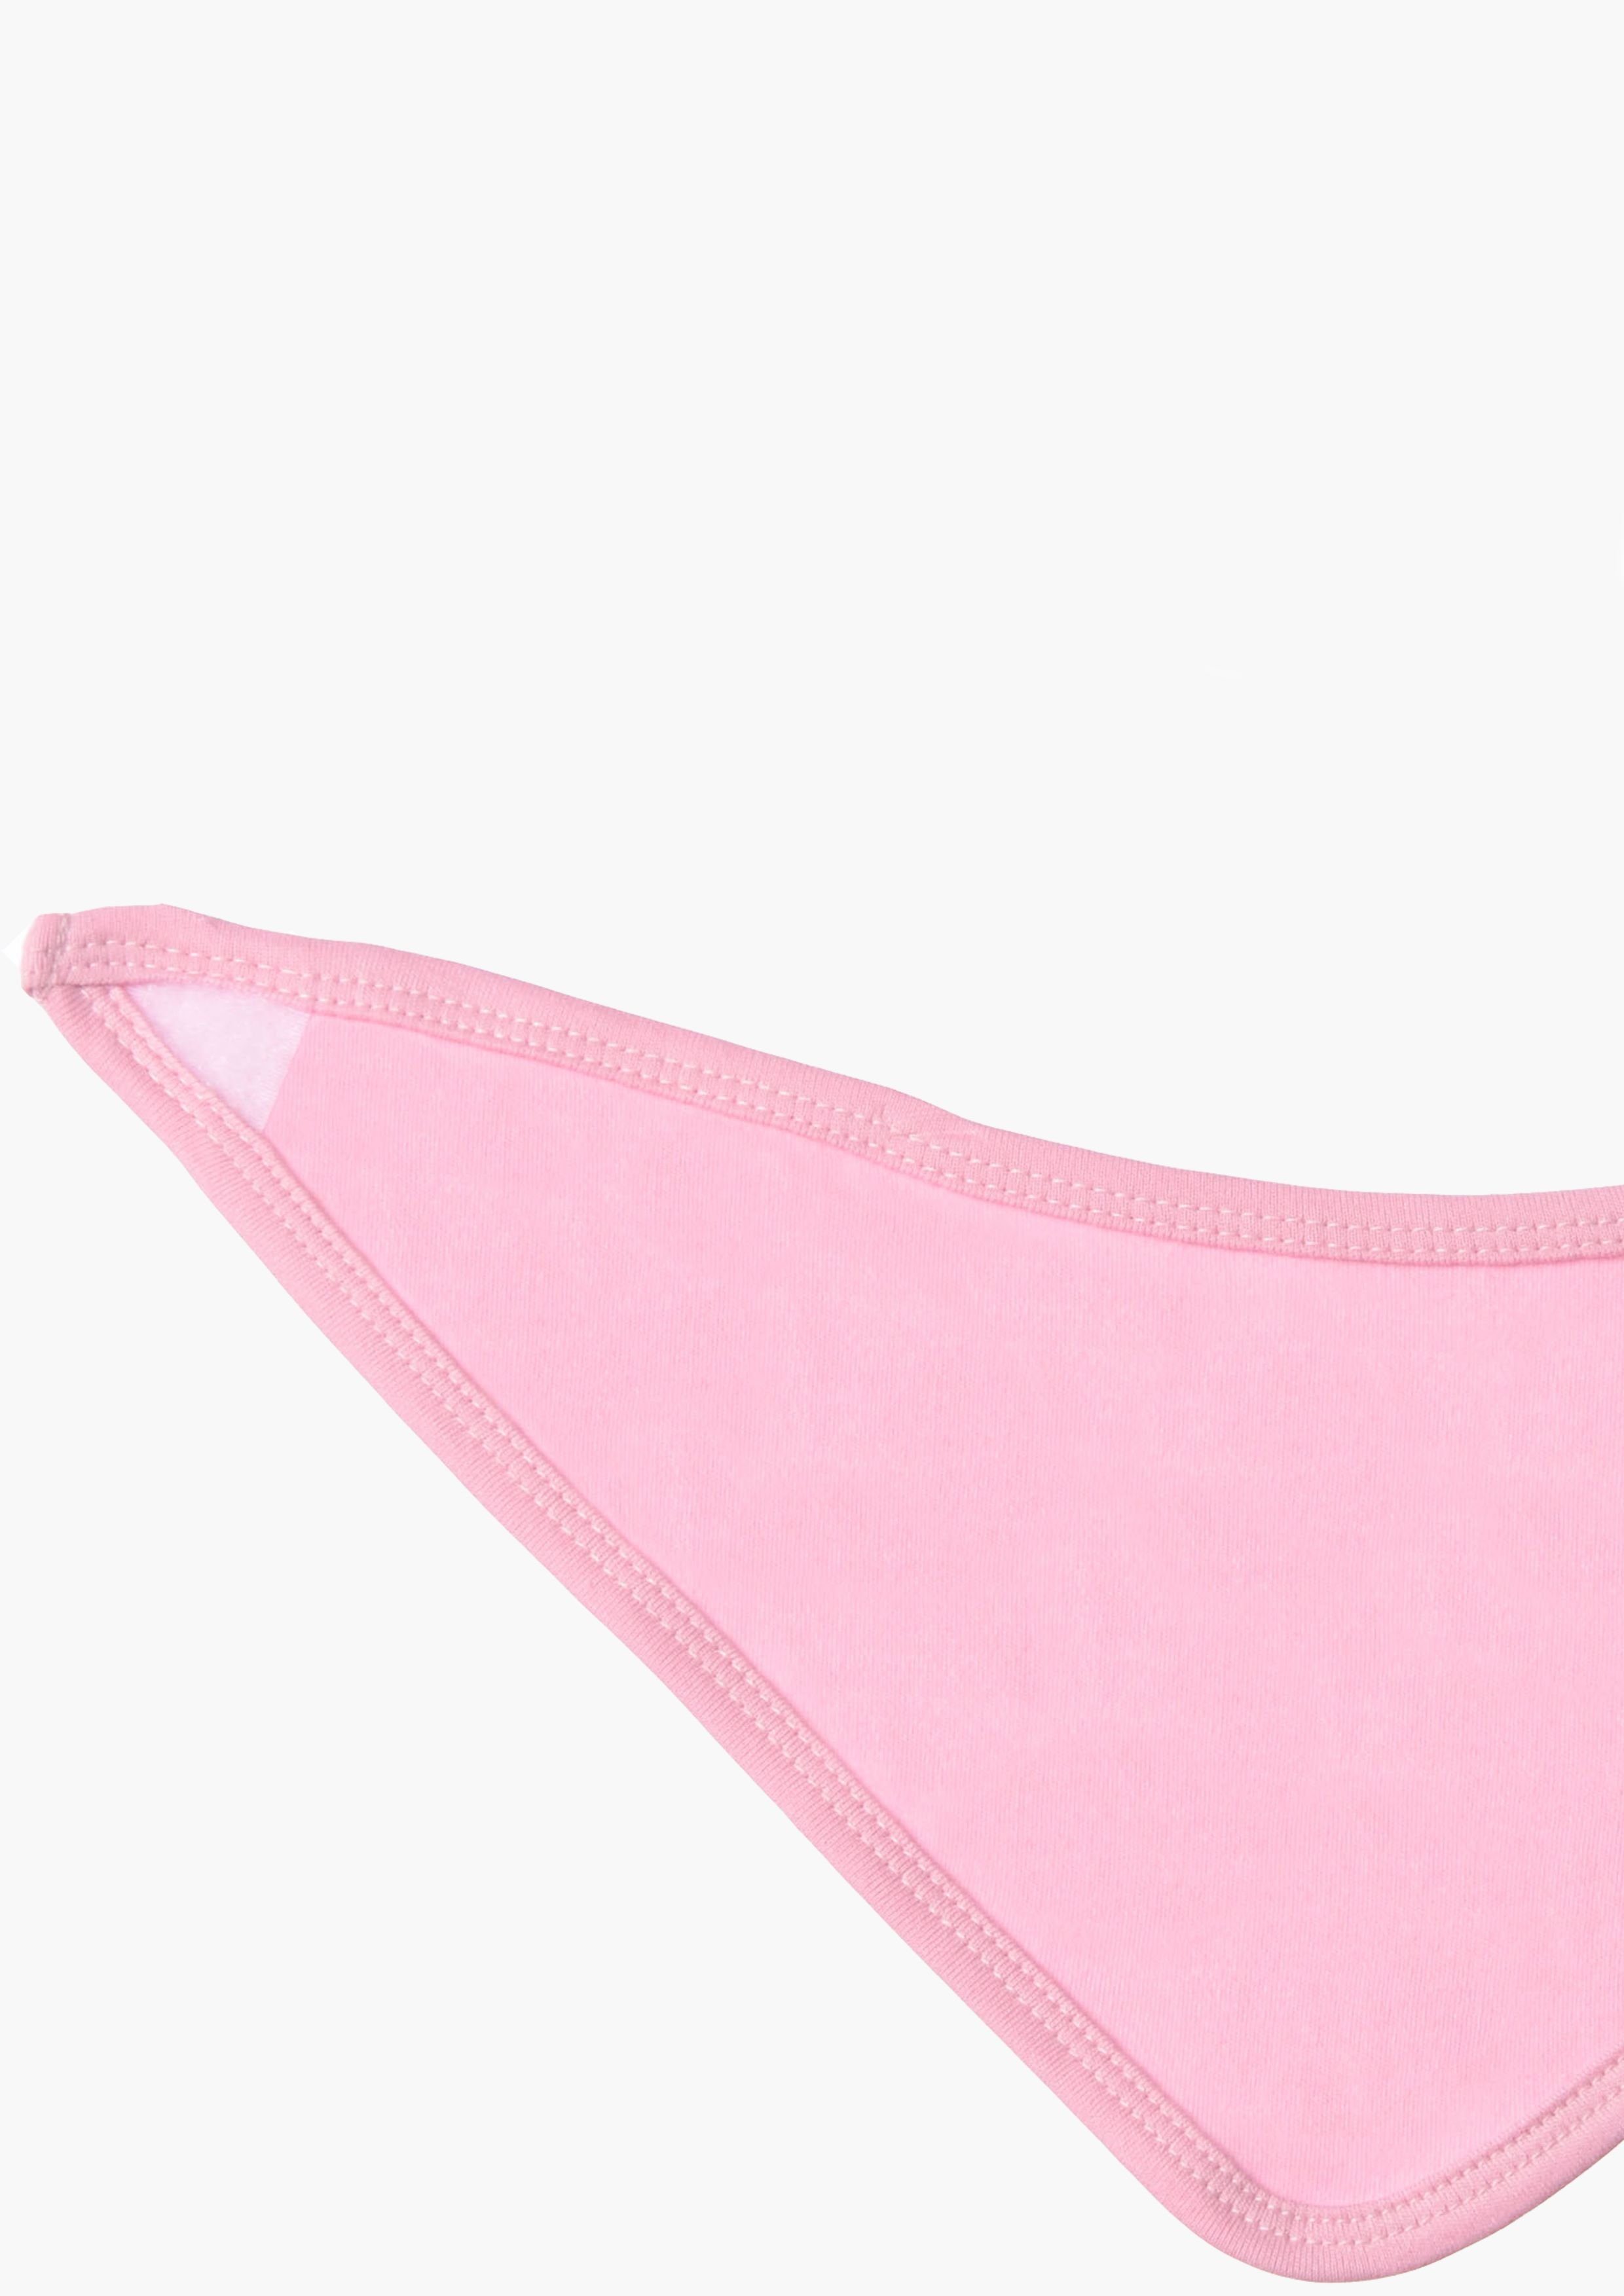 Liliput Erstausstattungspaket (2-tlg) in rosa Design klassischem